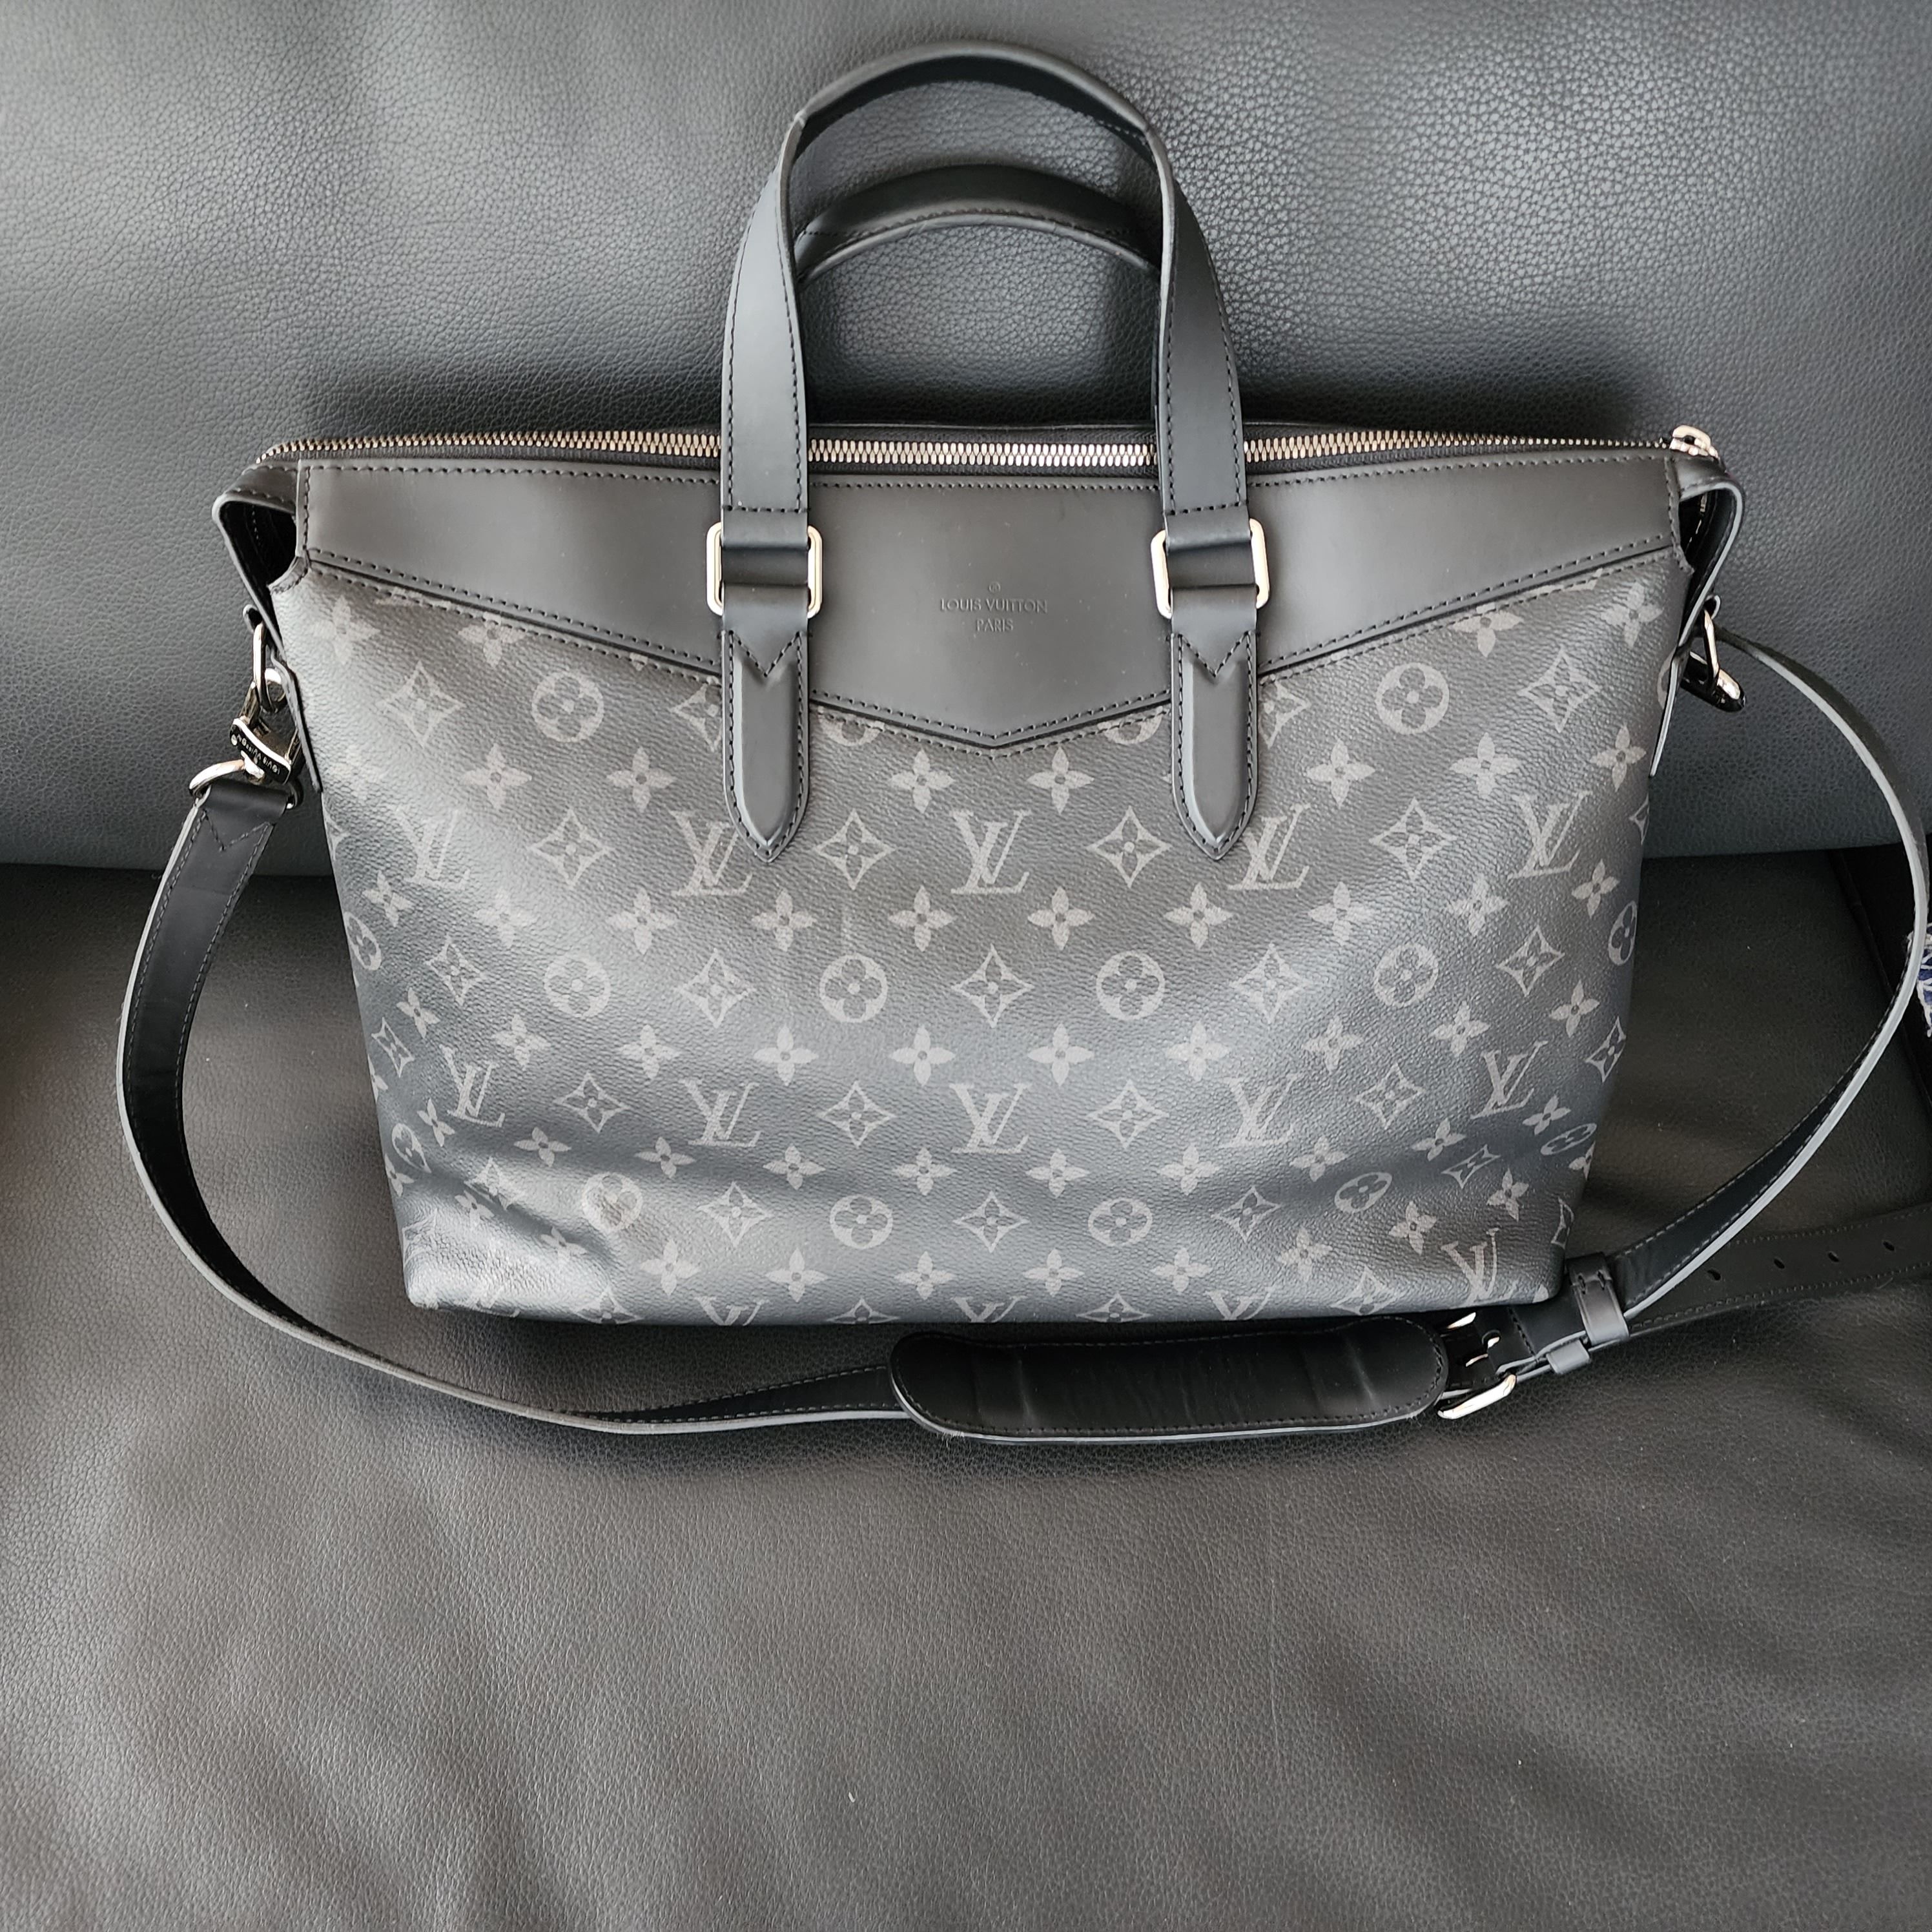 Shop Louis Vuitton Briefcase explorer (M40566) by CITYMONOSHOP